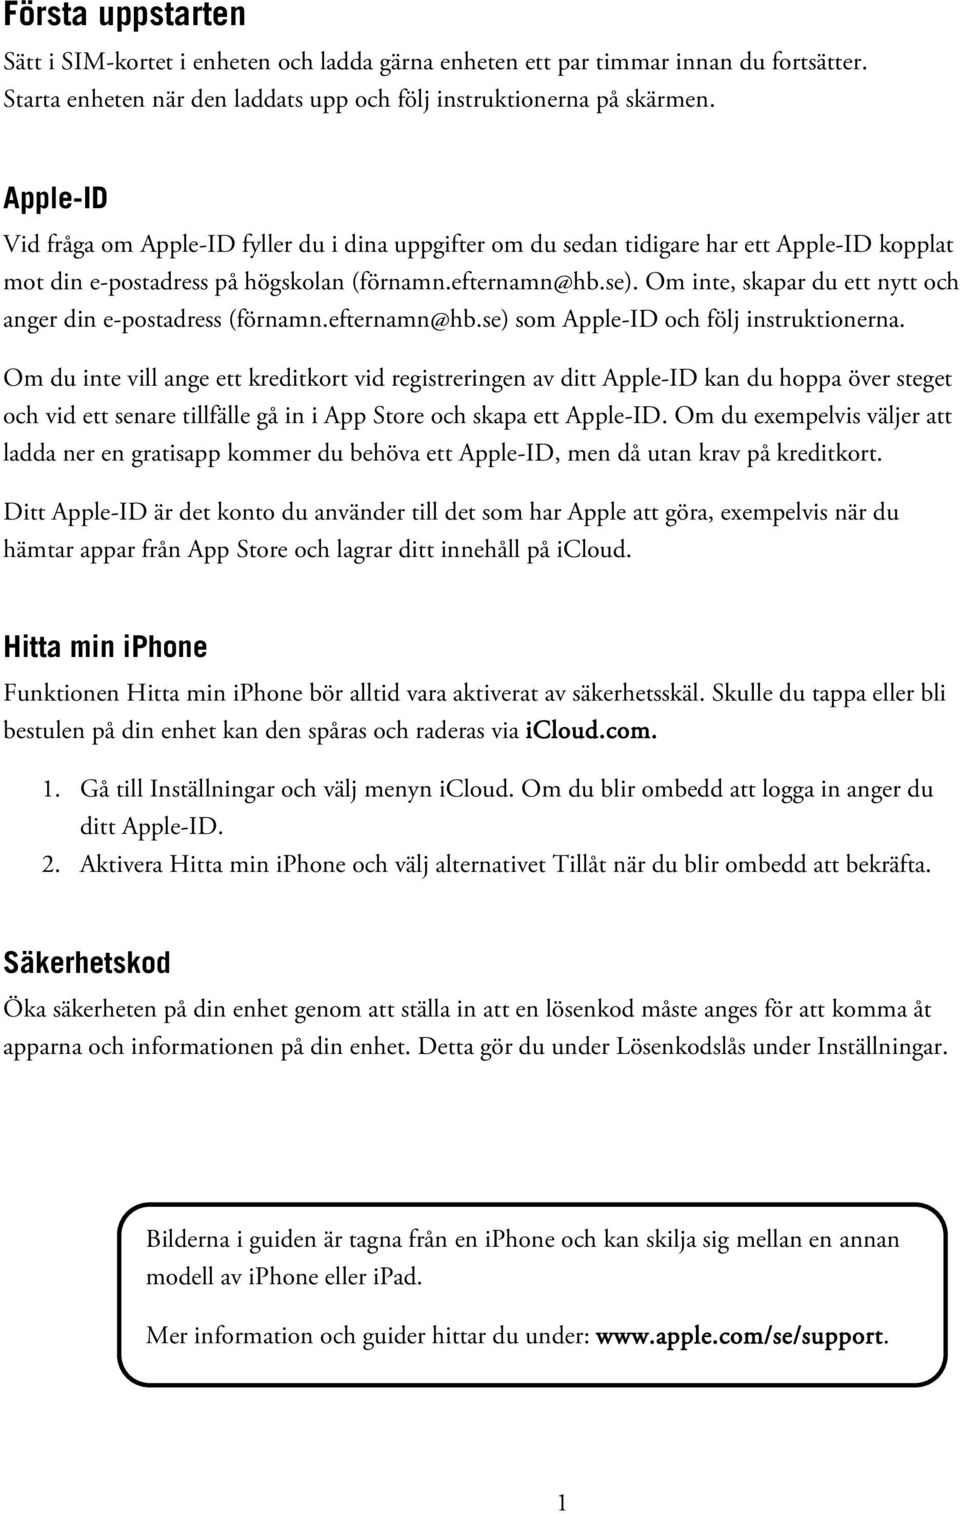 Om inte, skapar du ett nytt och anger din e-postadress (förnamn.efternamn@hb.se) som Apple-ID och följ instruktionerna.